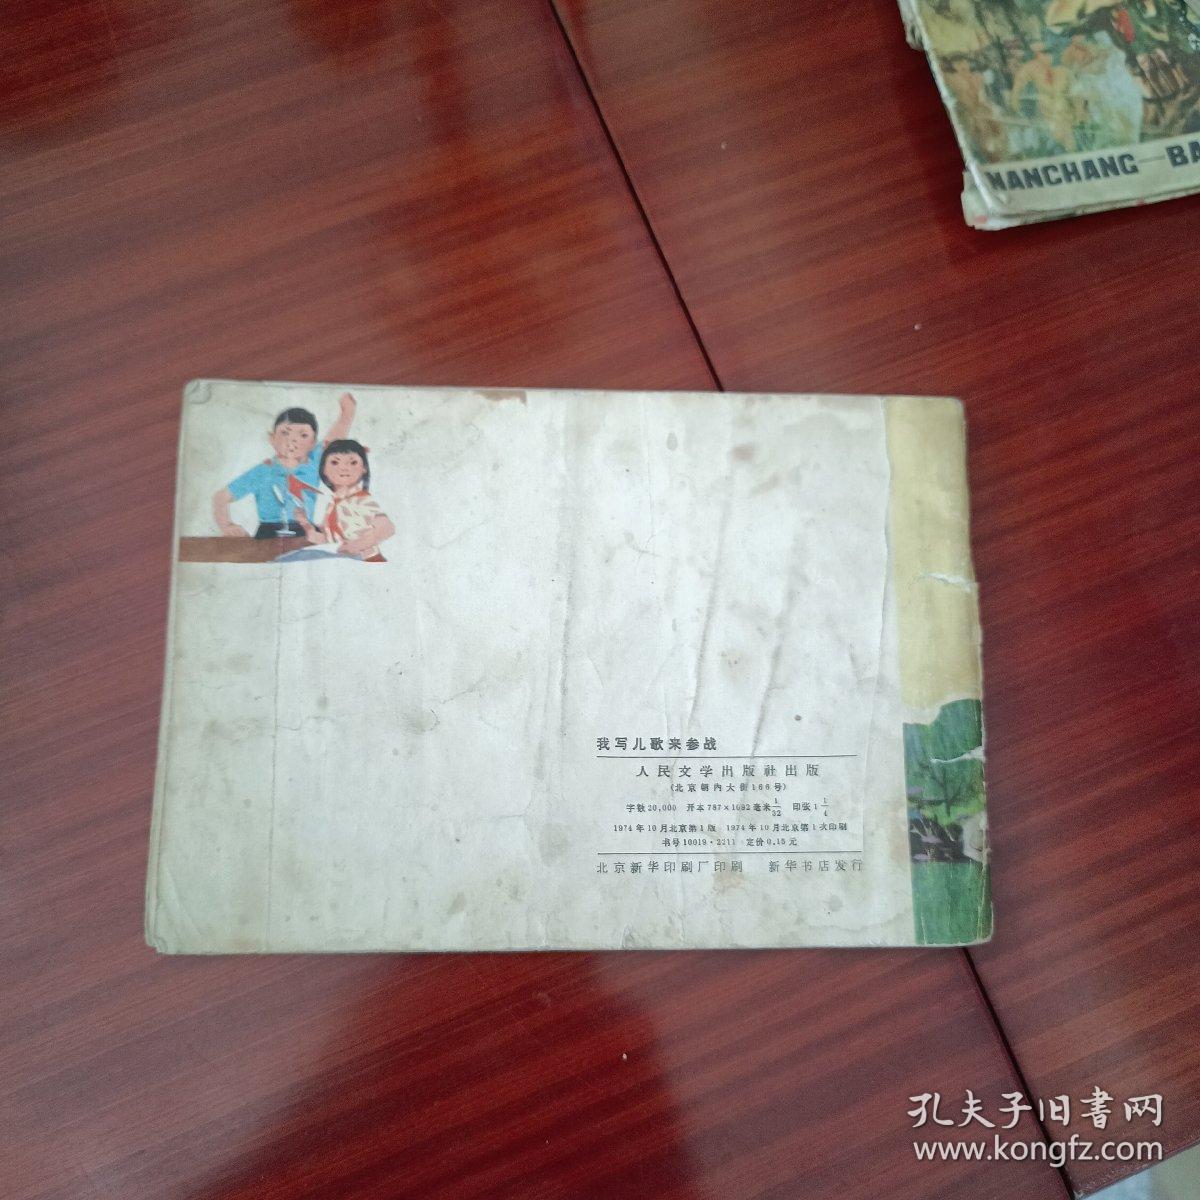 我写儿歌来参战:北京西四北小学红小兵诗歌选